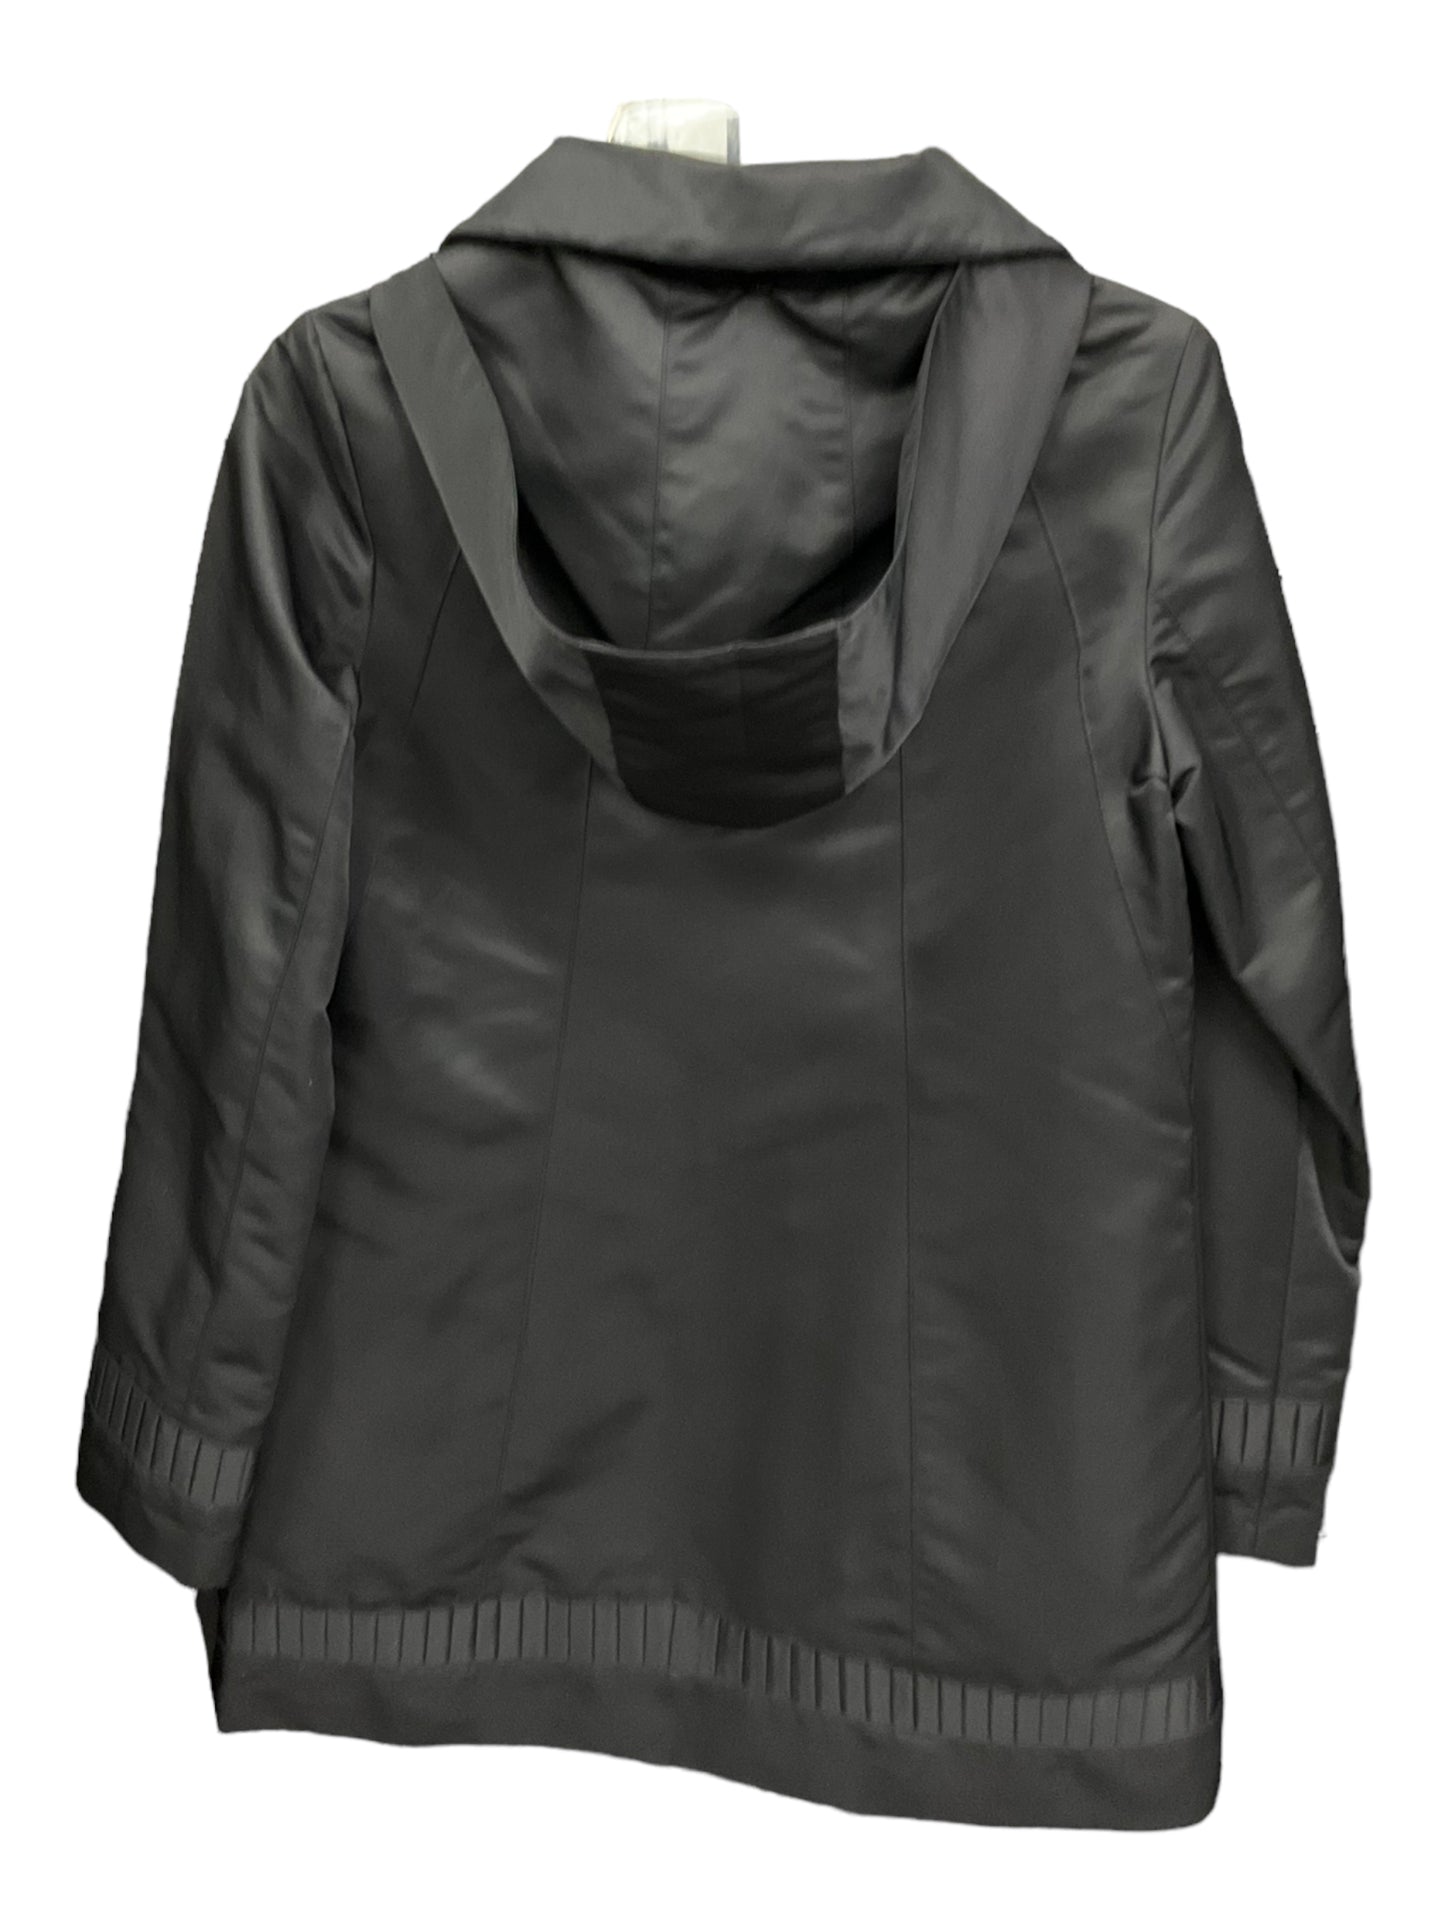 Jacket Utility By Jones New York  Size: Xs